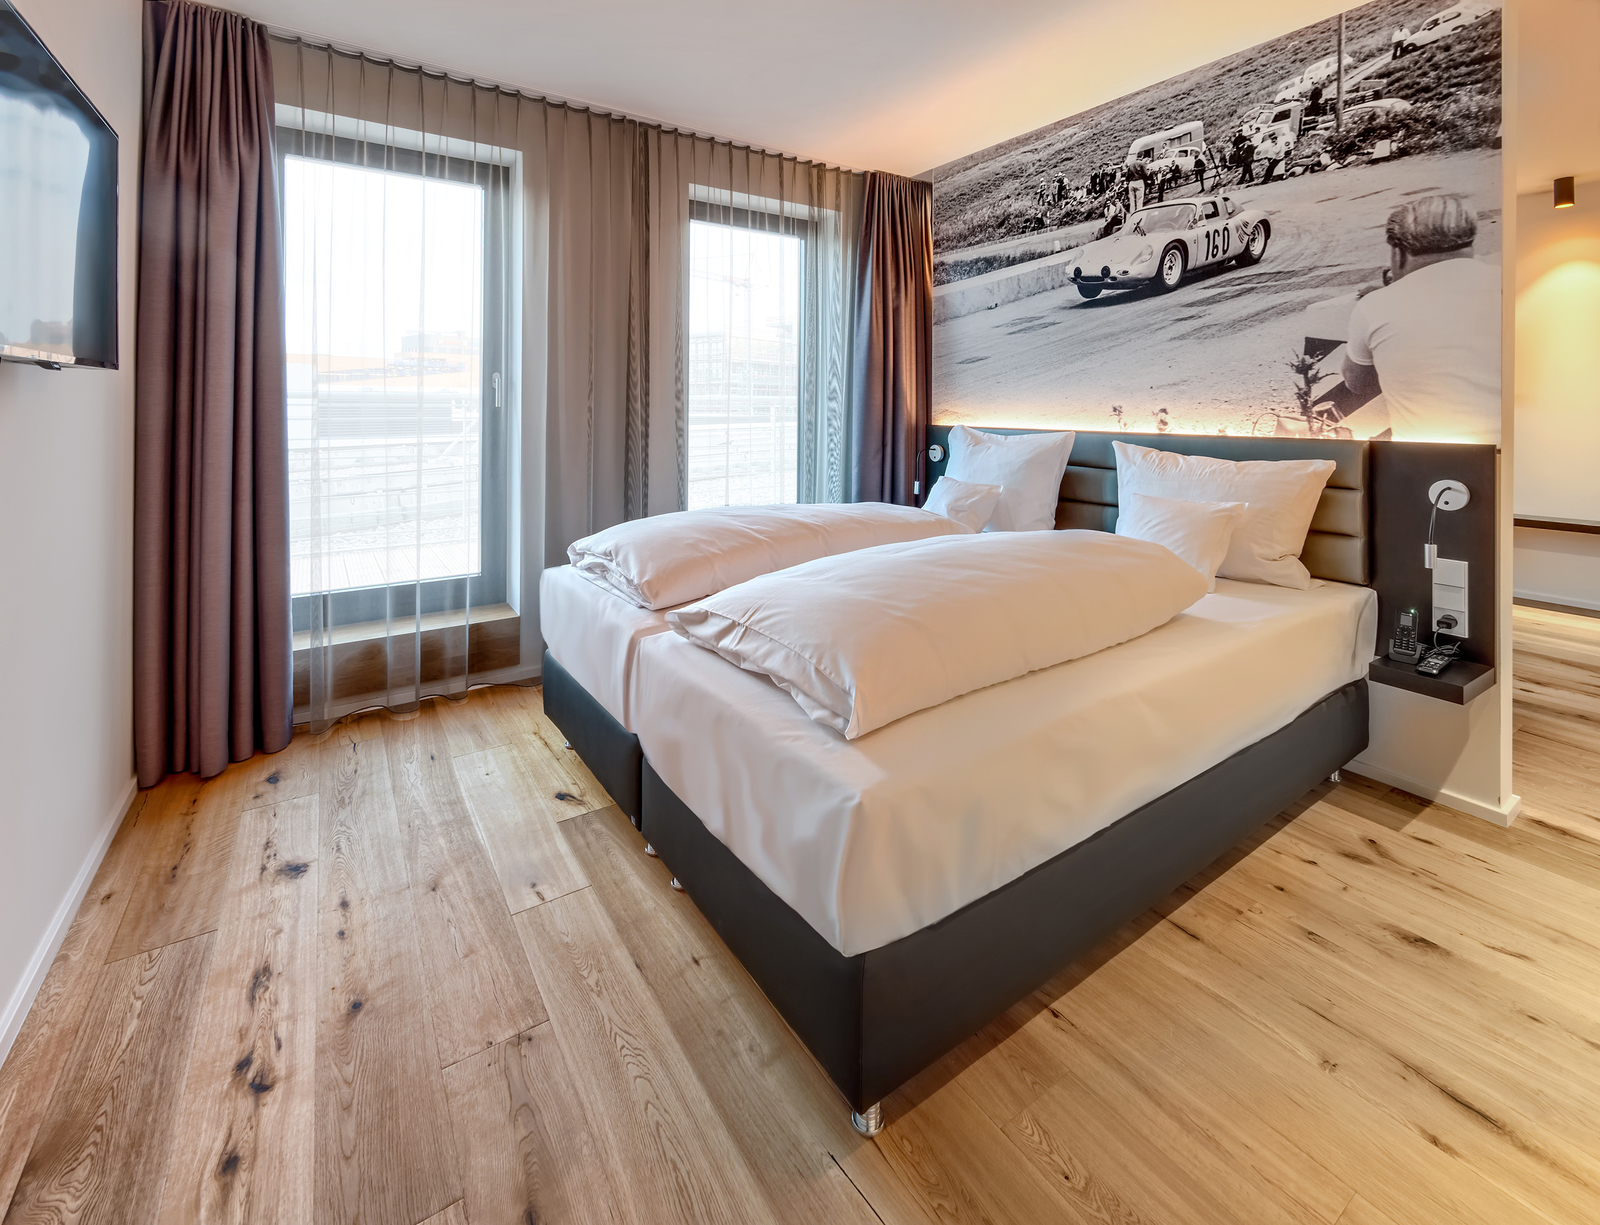 Eines der Serviced Apartments in Böblingen mit gemütlichem Doppelbett, beleuchteter Kopfleiste, großen Fenstern und TV.